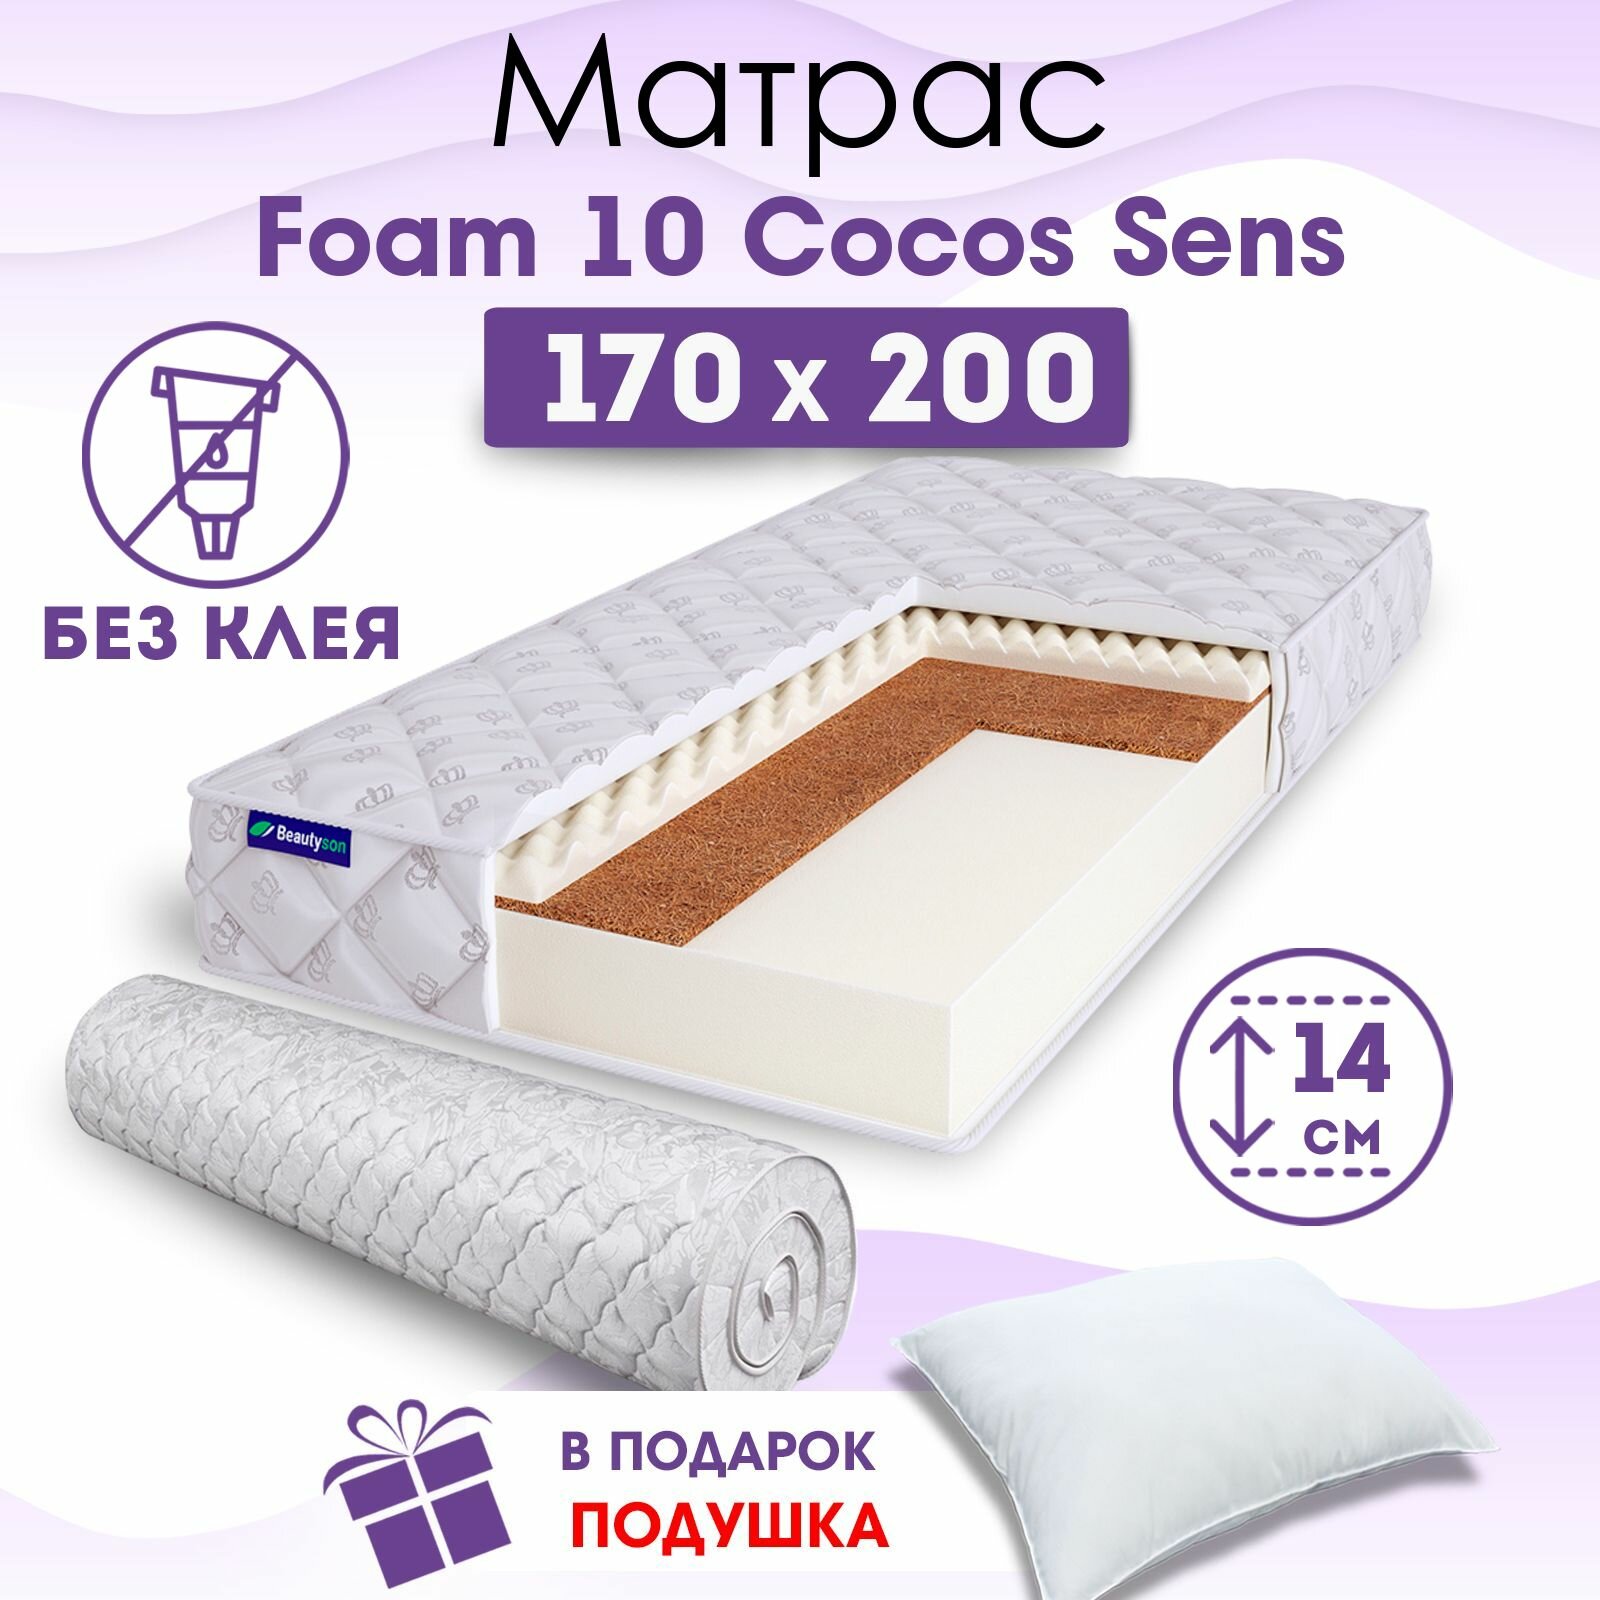 Ортопедический матрас Beautyson Foam 10 Cocos Sens без клея, 170х200, 14 см, беспружинный, двухспальный, на кровать, для дивана, умеренно мягкий